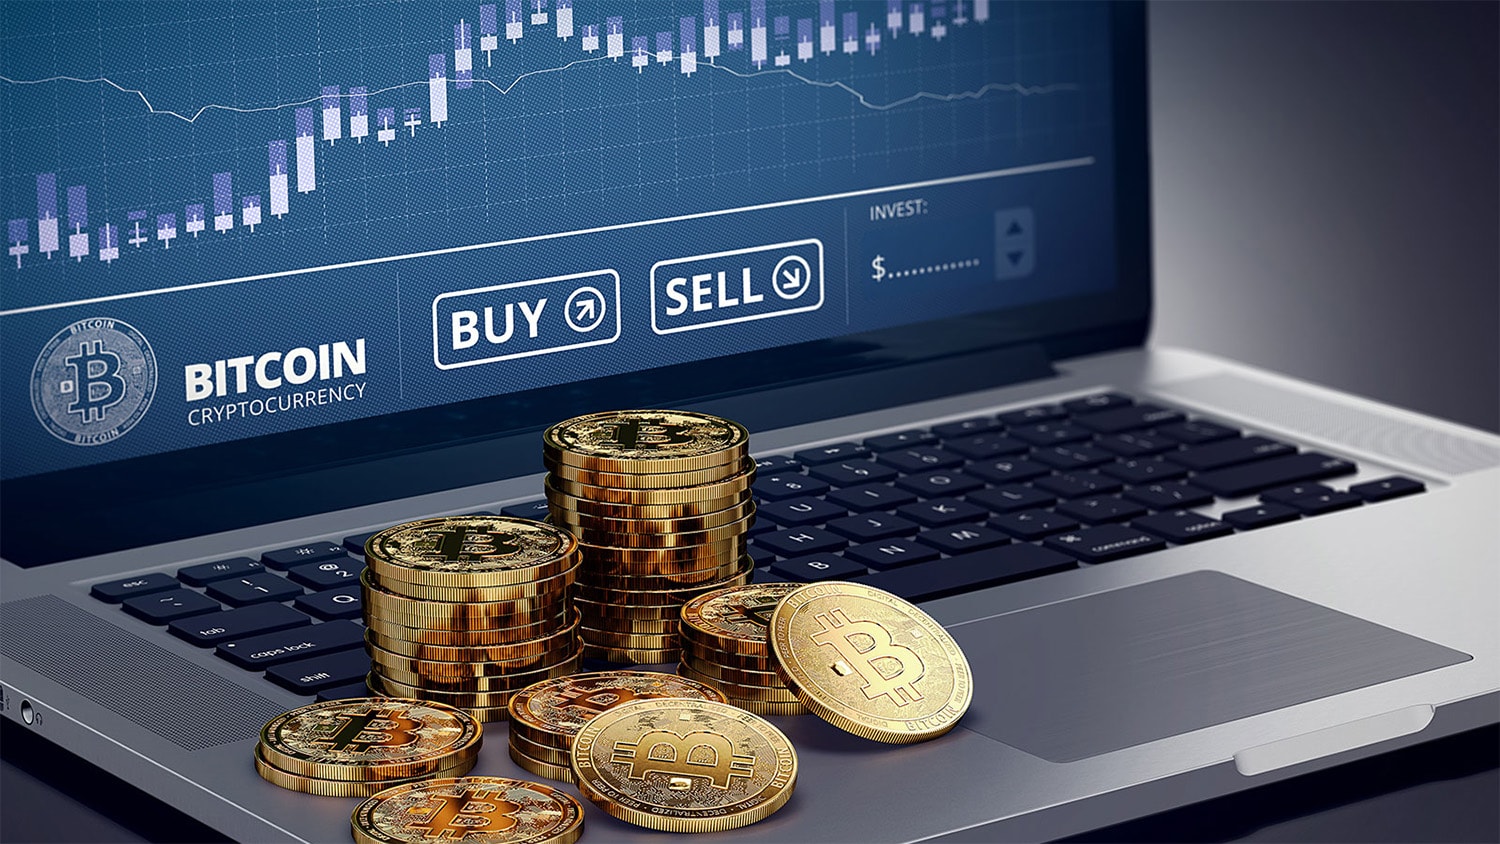 Bitcoin news trader legit bet data